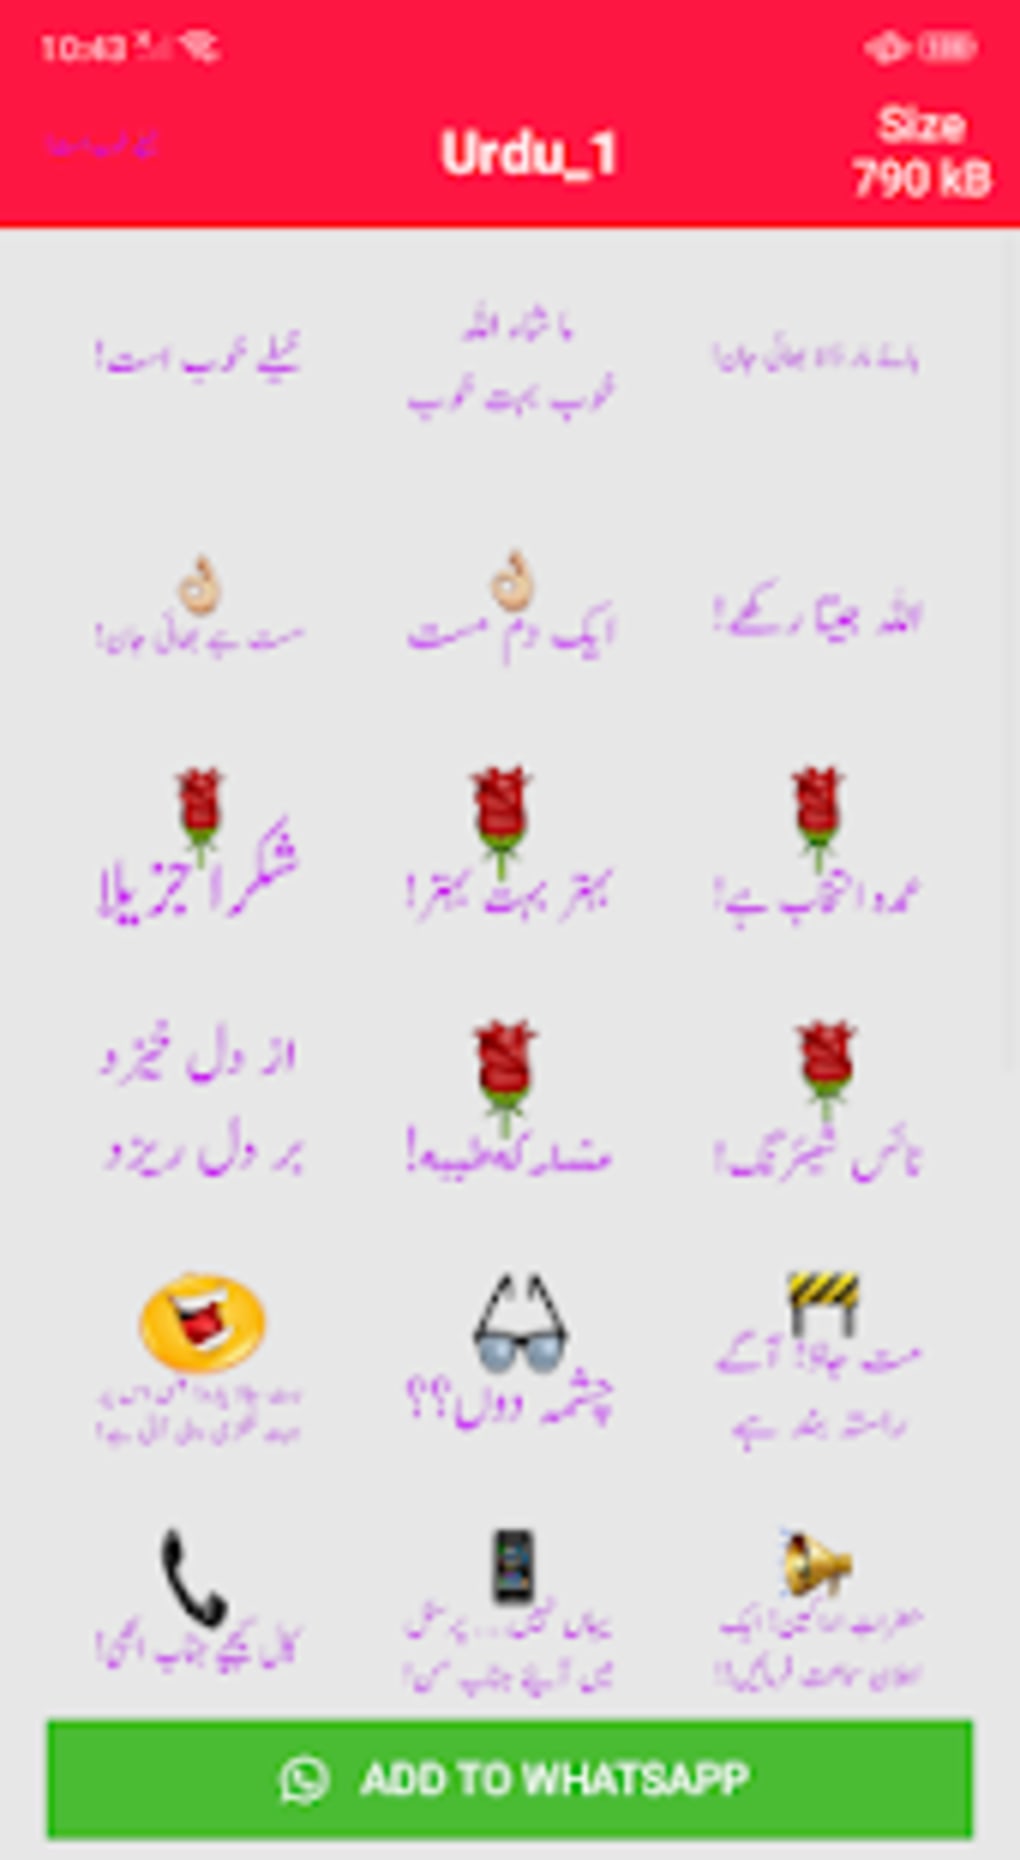 Whatsapp stickers in urdu